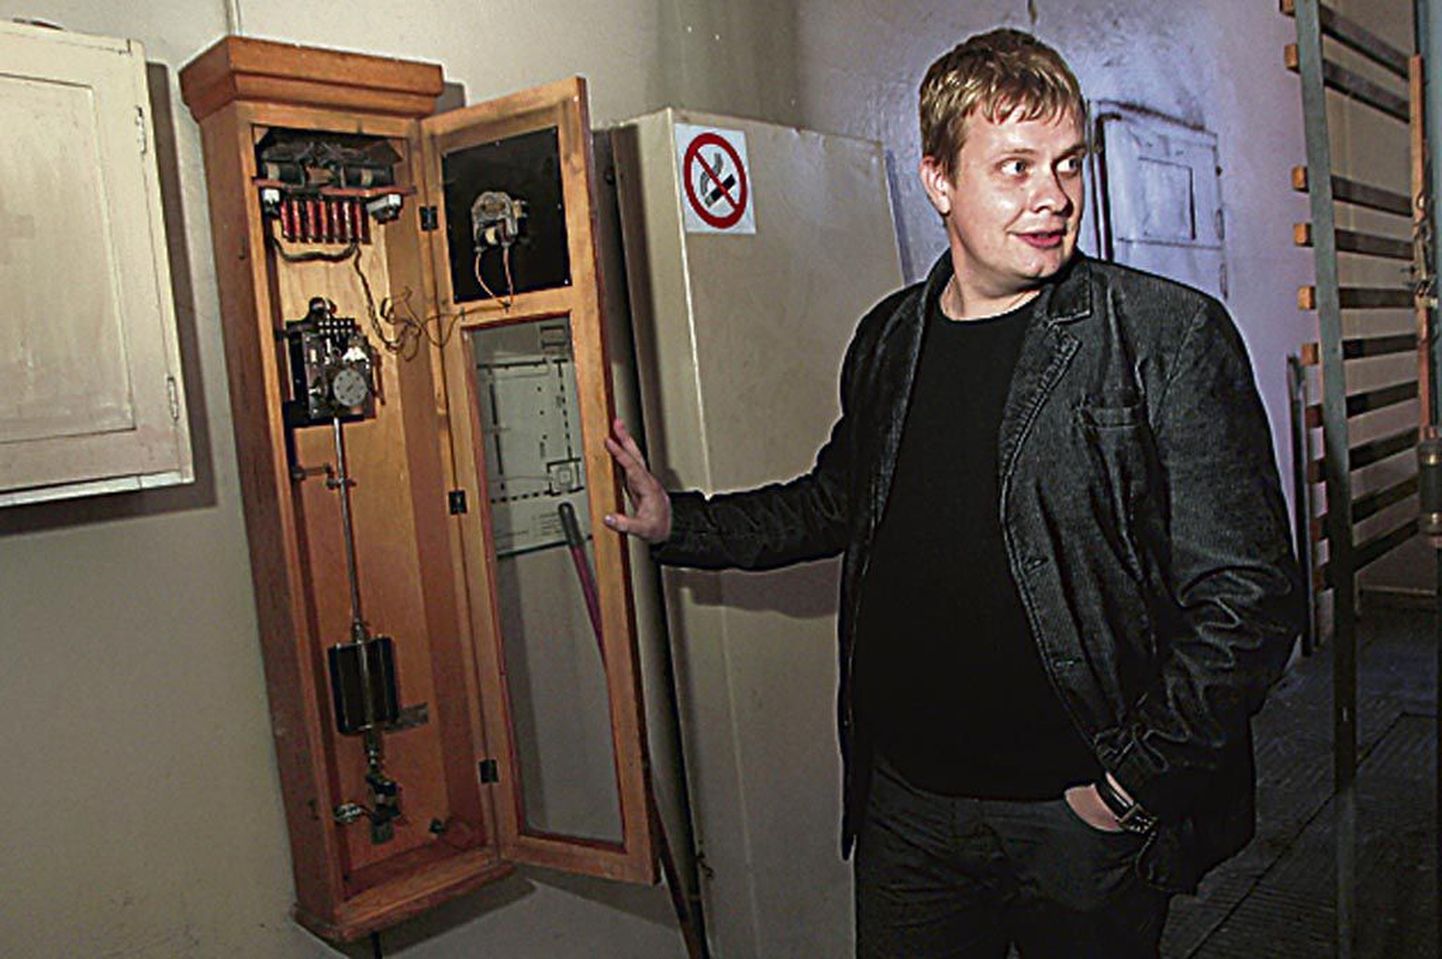 Toimetuse arhiivis on veel foto, kus Tootsi vallavanem Kalev Kaljuste näitab briketivabriku elektromehhaanilist emakella.